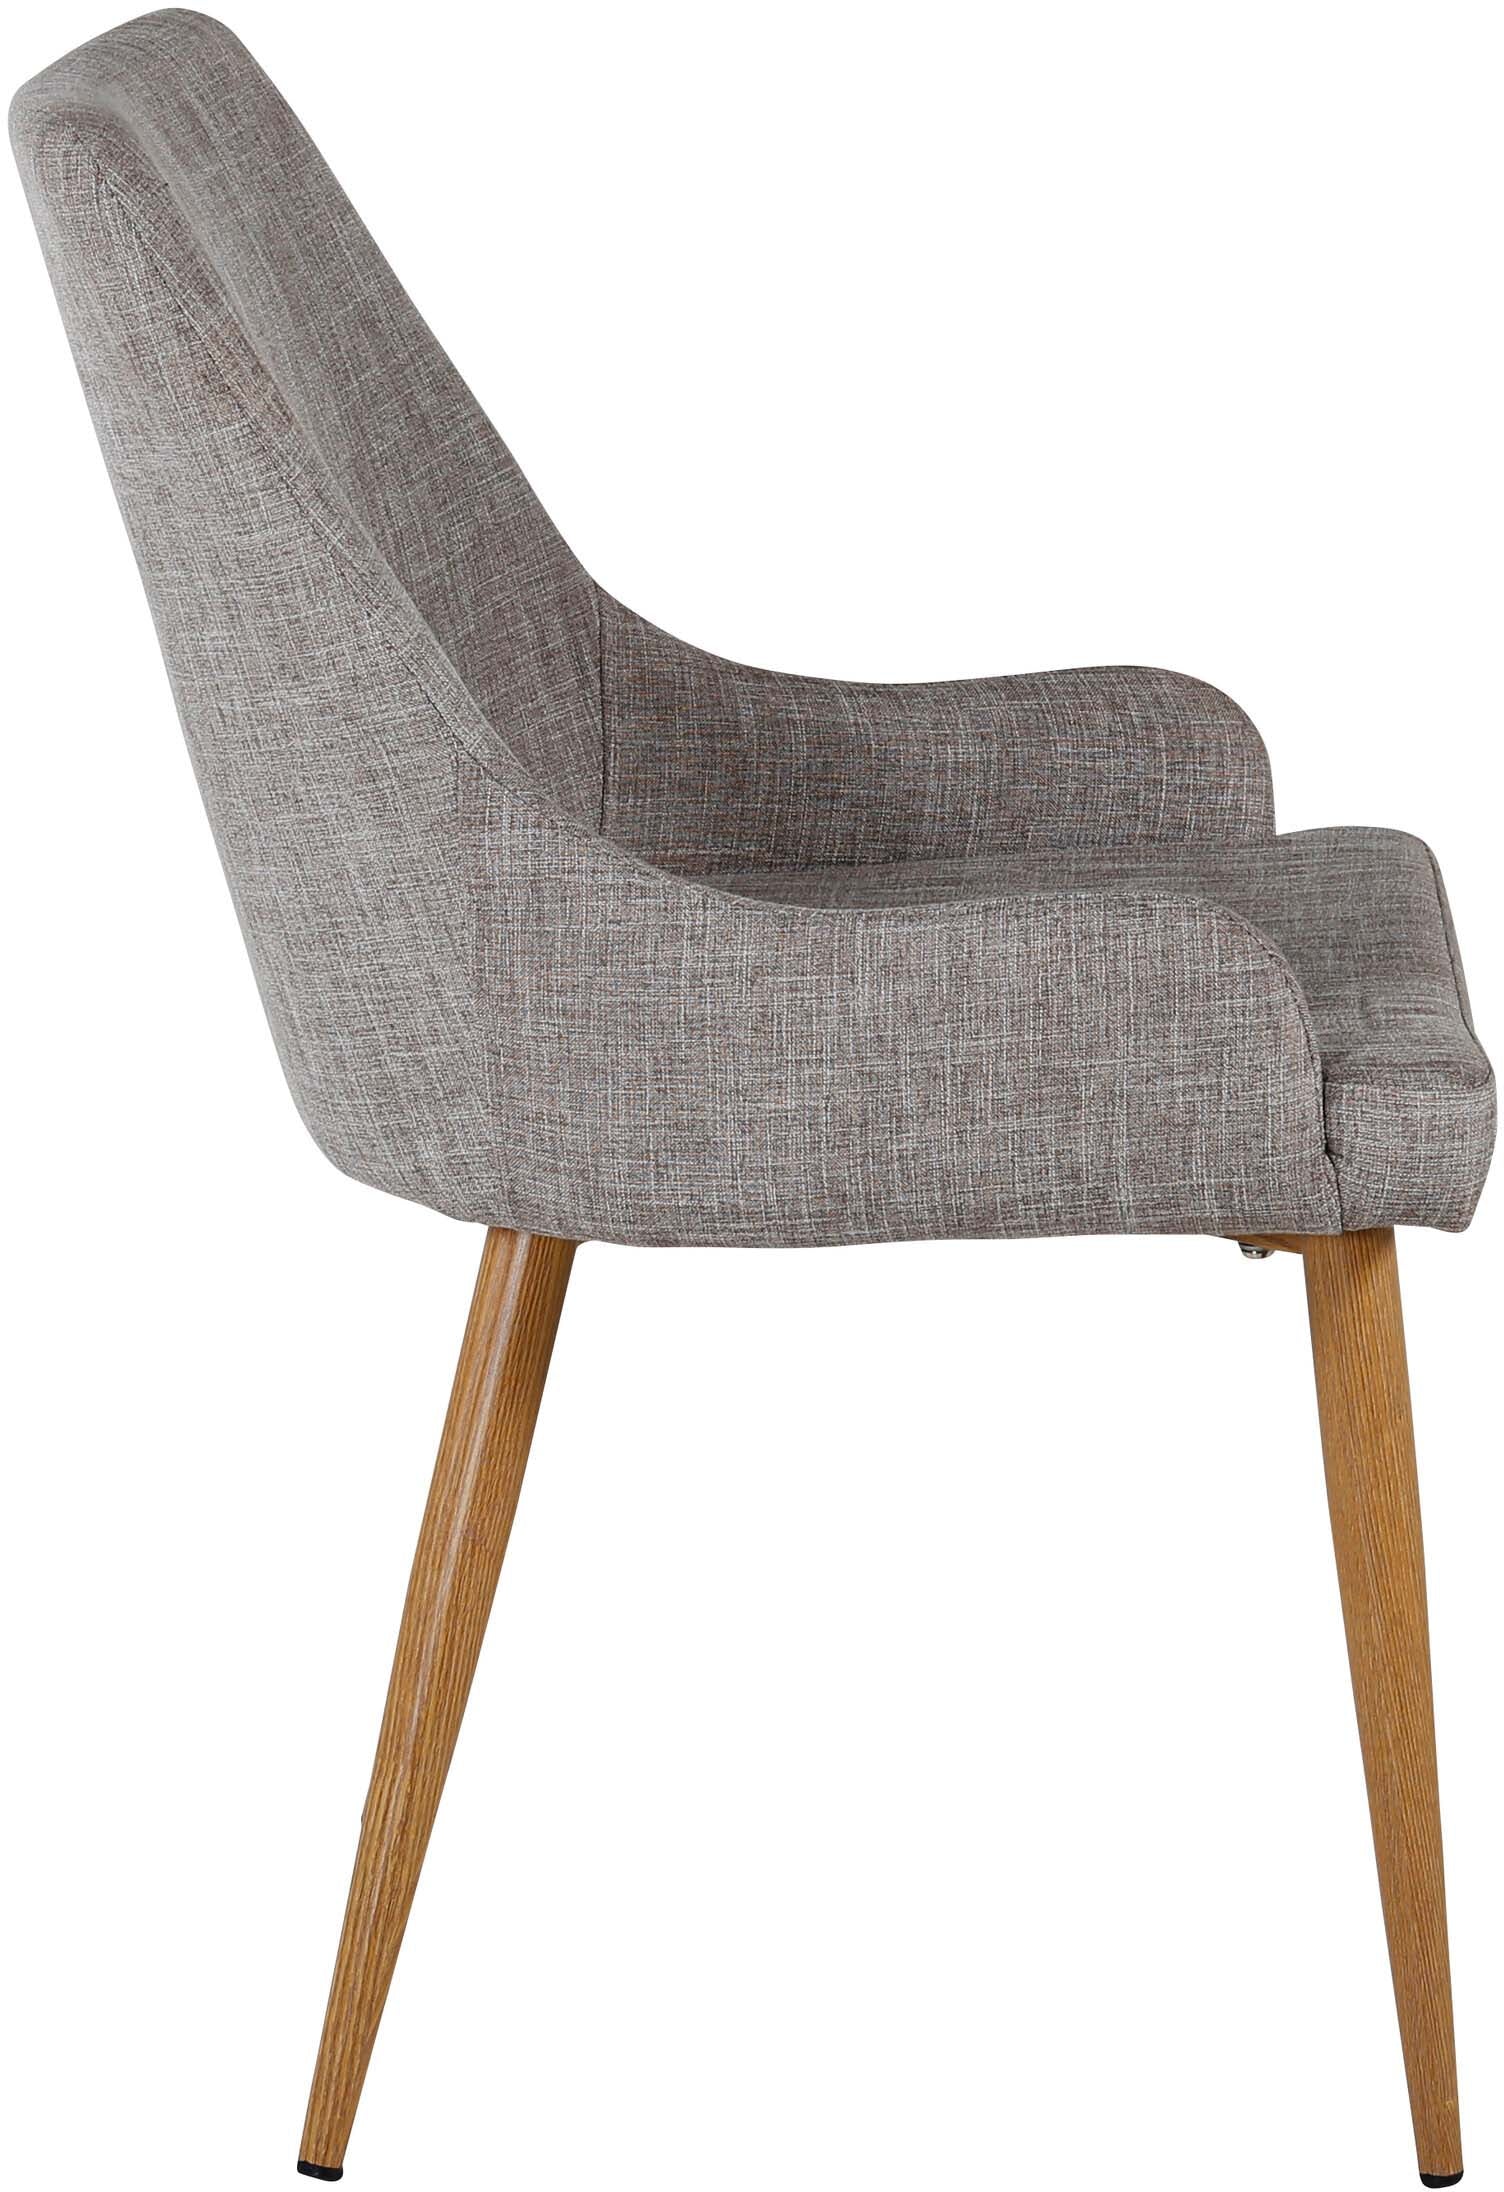 Plaza Stuhl in Grau / Natur präsentiert im Onlineshop von KAQTU Design AG. Stuhl ist von Venture Home